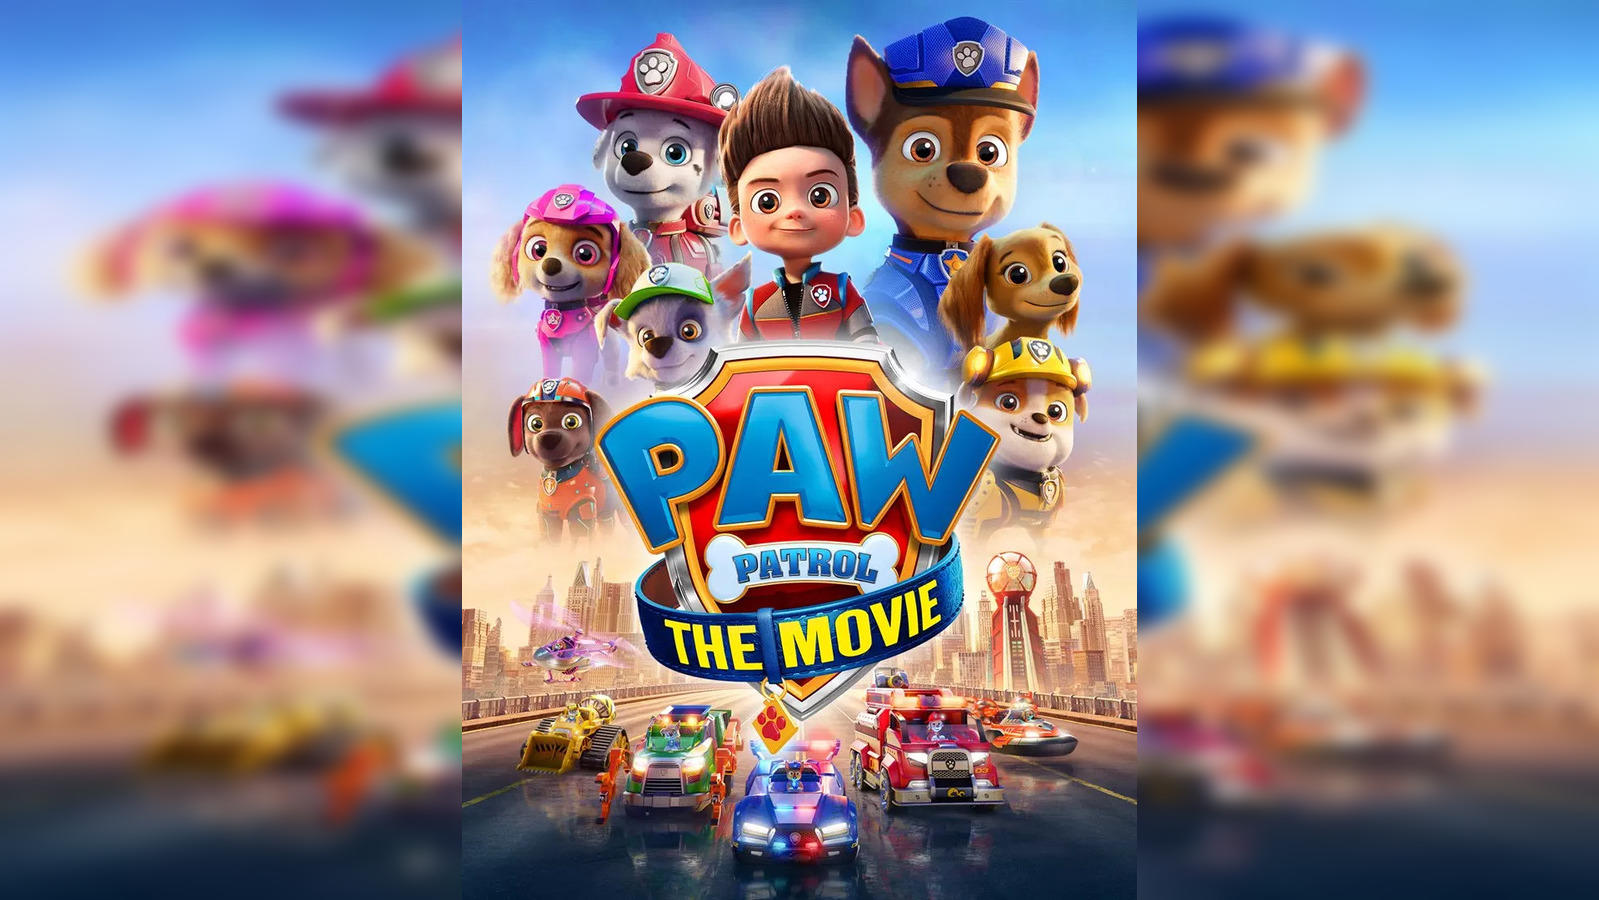 PAW Patrol: Volume 4 - TV en Google Play